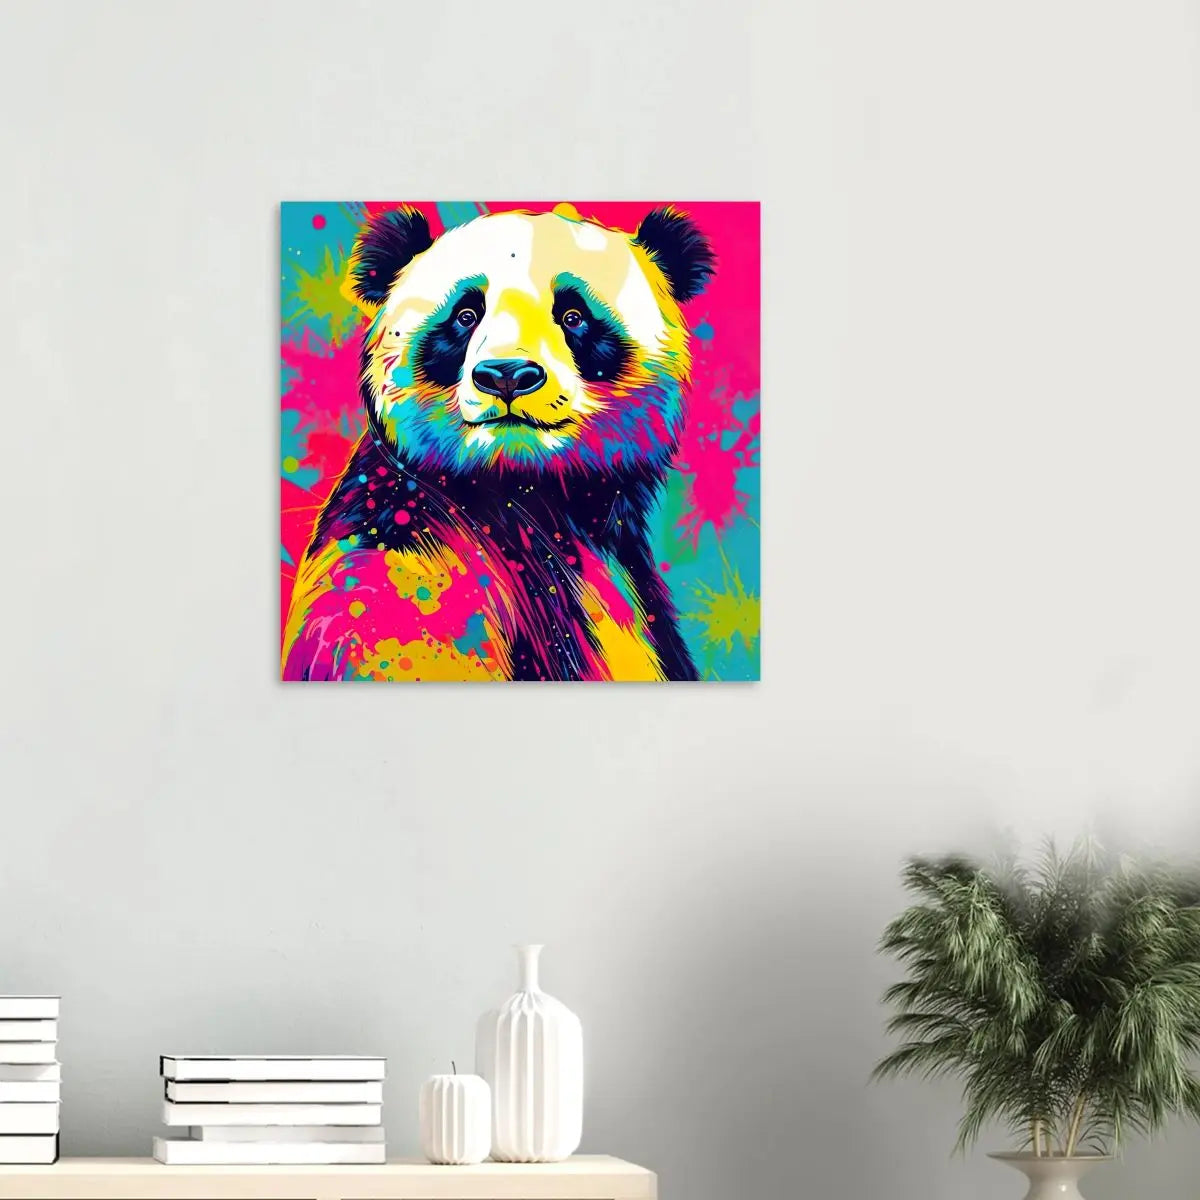 Aluminiumdruck - Pandabär - Pop Art Stil, KI-Kunst, RolConArt